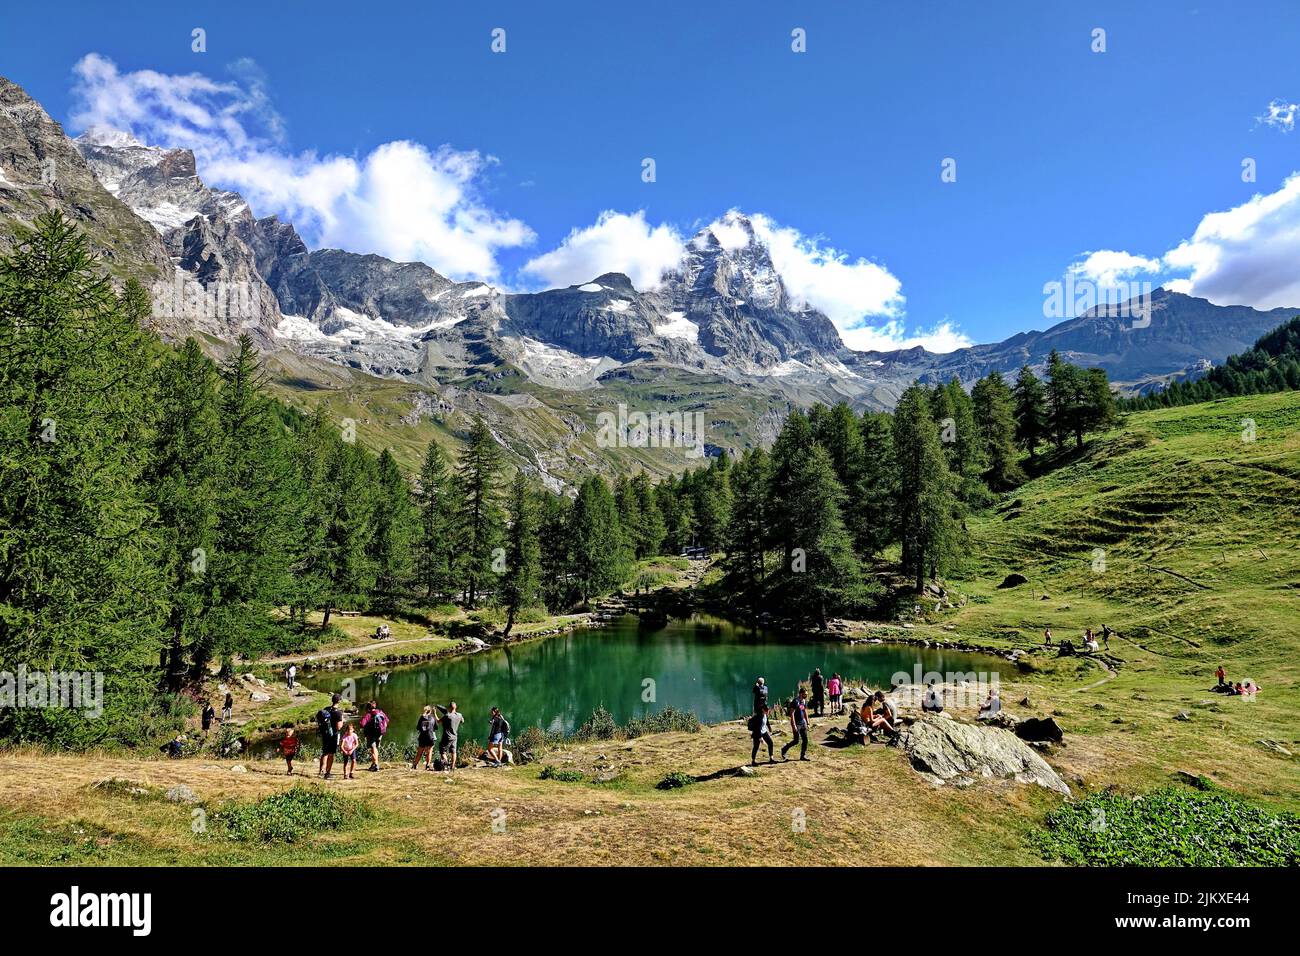 Sommeralpenlandschaft mit dem Matterhorn (Cervino) am Blauen See (Lago Blu) bei Breuil-Cervinia. Aostatal, Italien - August 2022 Stockfoto